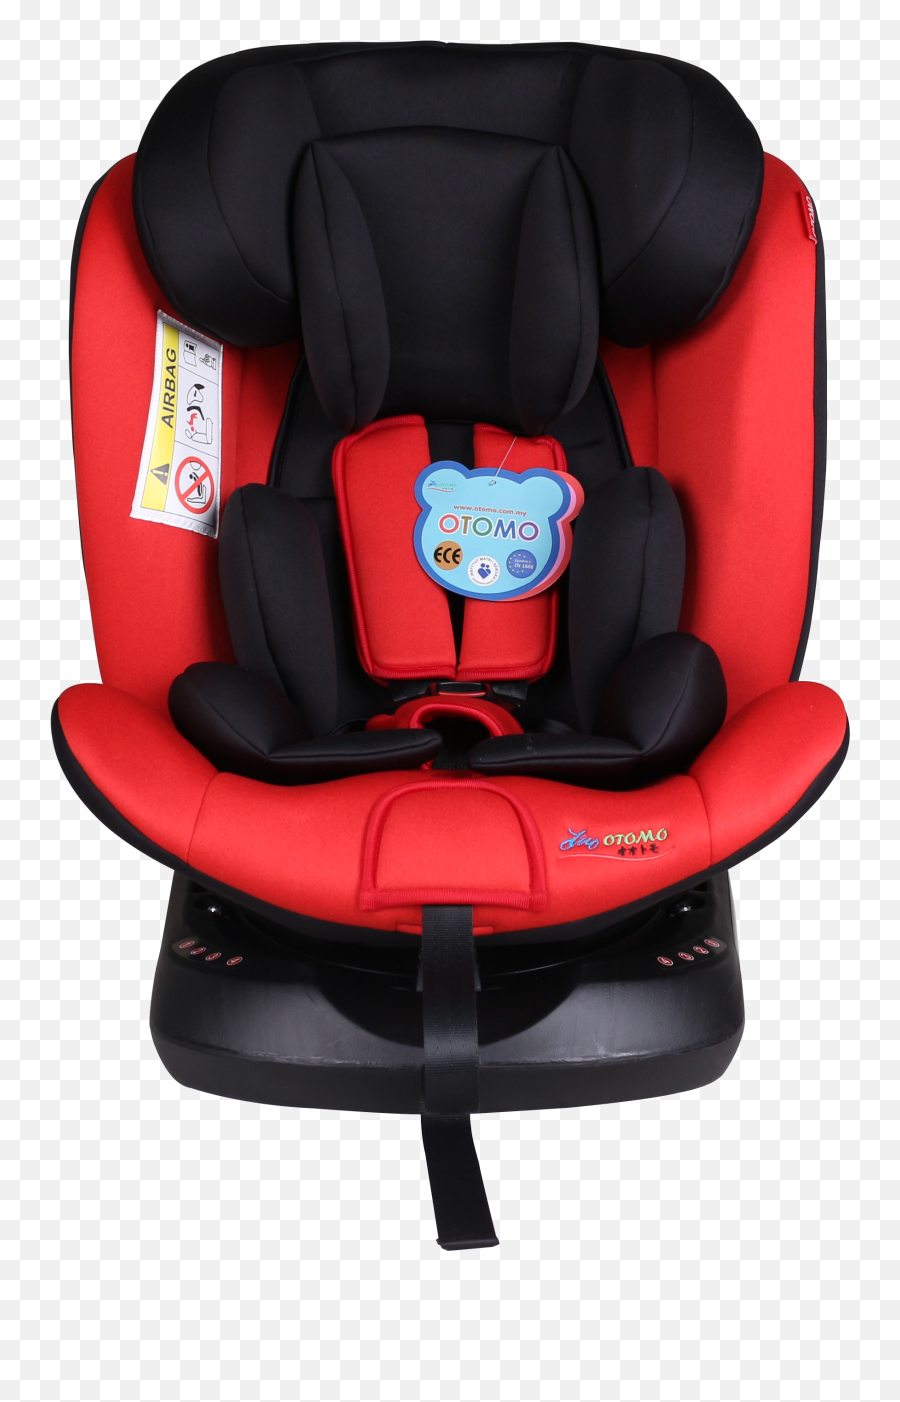 Hb636 360 Degree Rotation Car Seat - Car Seat Emoji,Seat Emoji